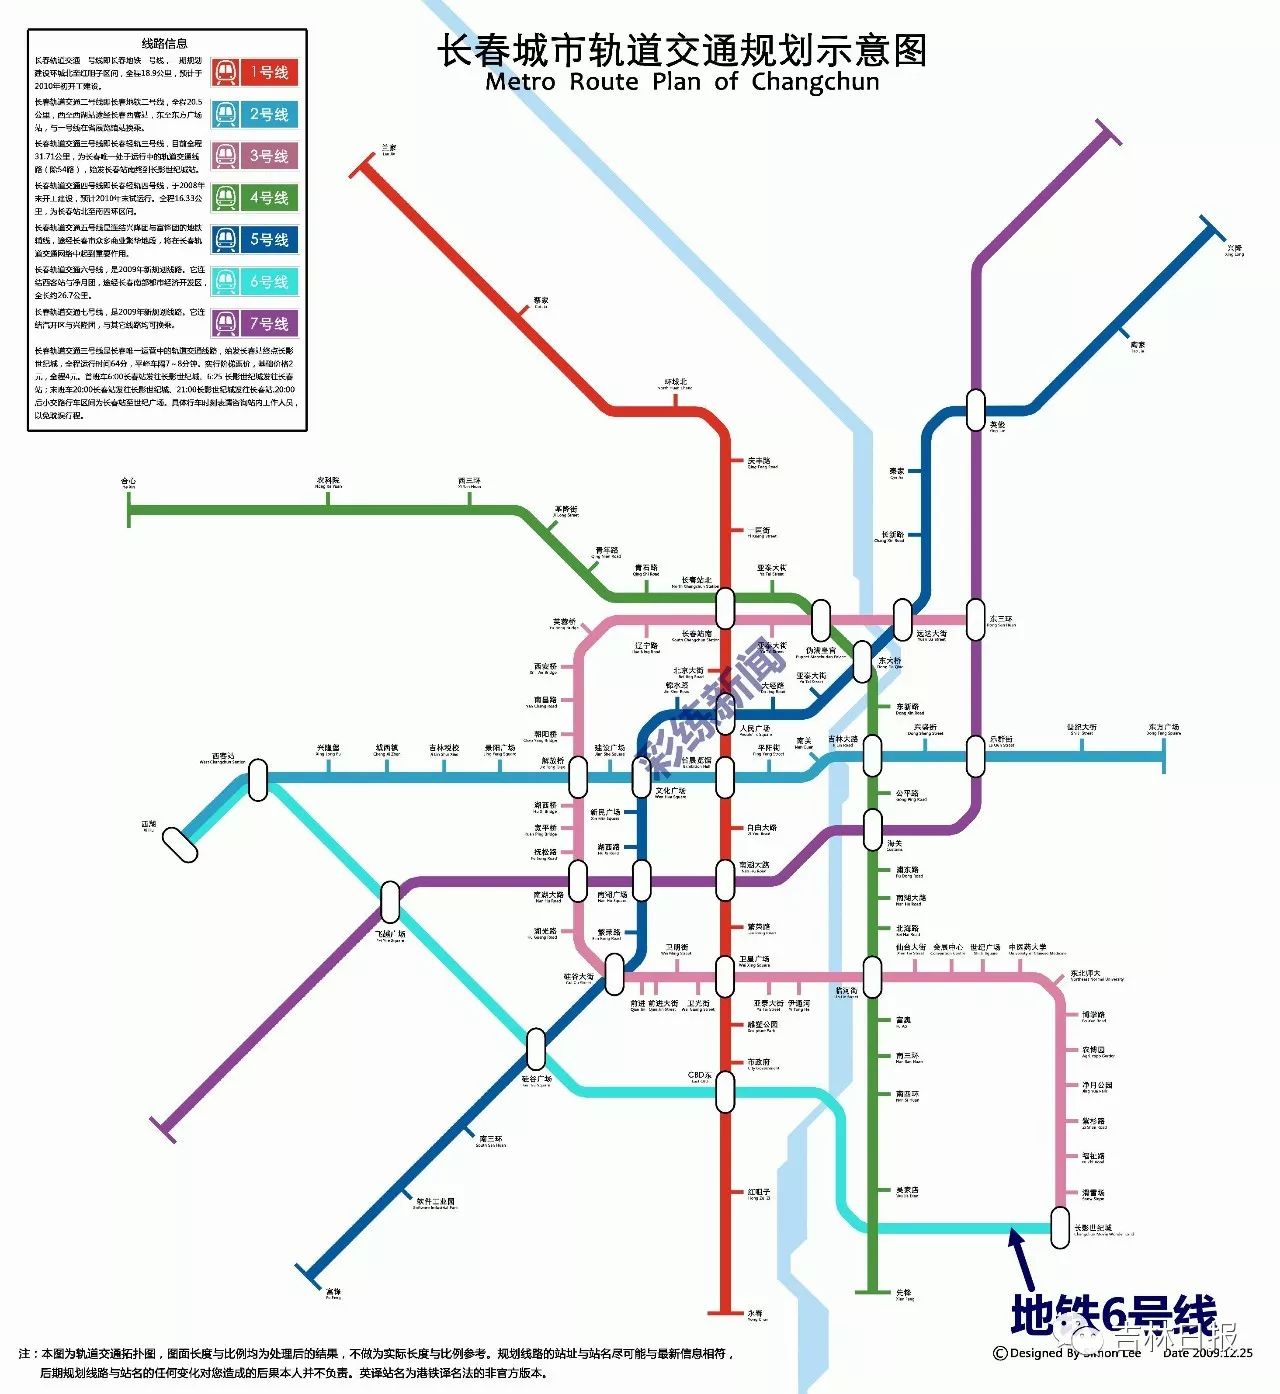 《长春市综合交通体系规划》中,地铁6号线设有长春西站祝家屯站自立